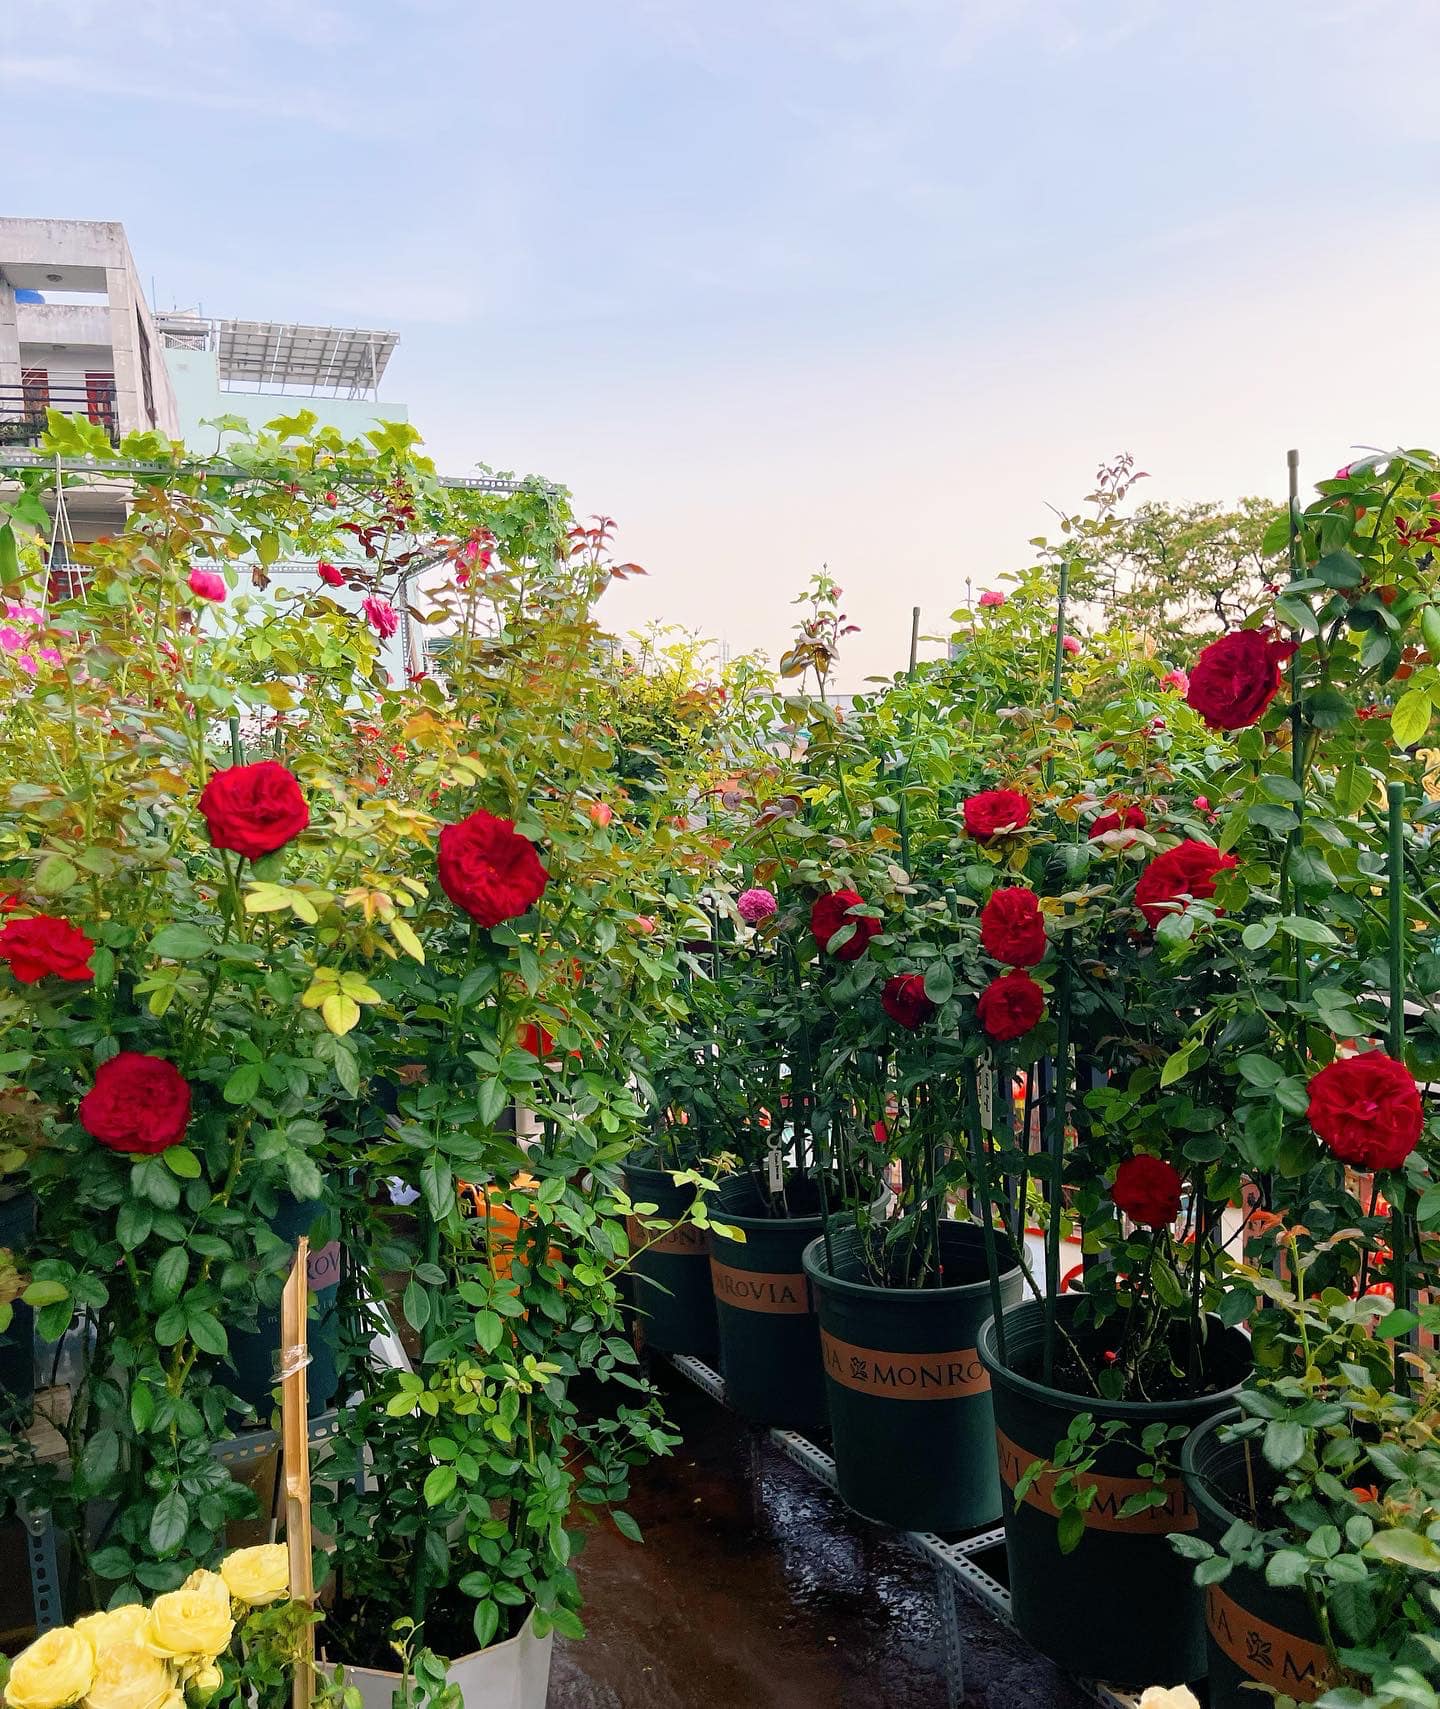 Khu vườn hoa hồng đẹp ngây ngất trên sân thượng ở TP HCM